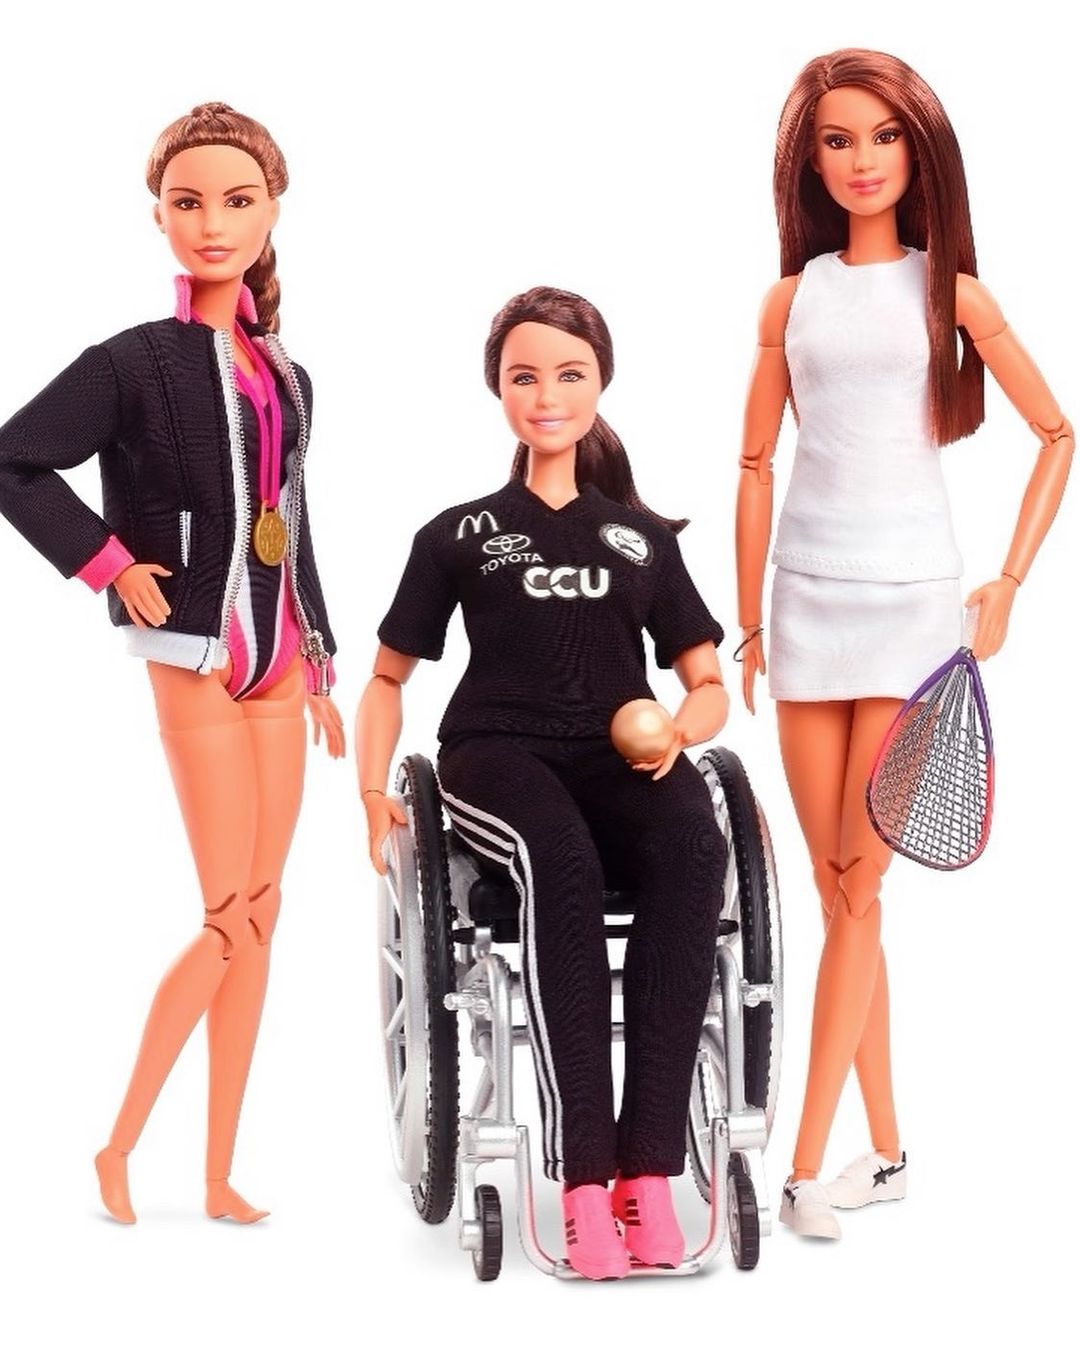 Barbie se inspiró en una deportista paralímpica chilena para su nueva muñeca